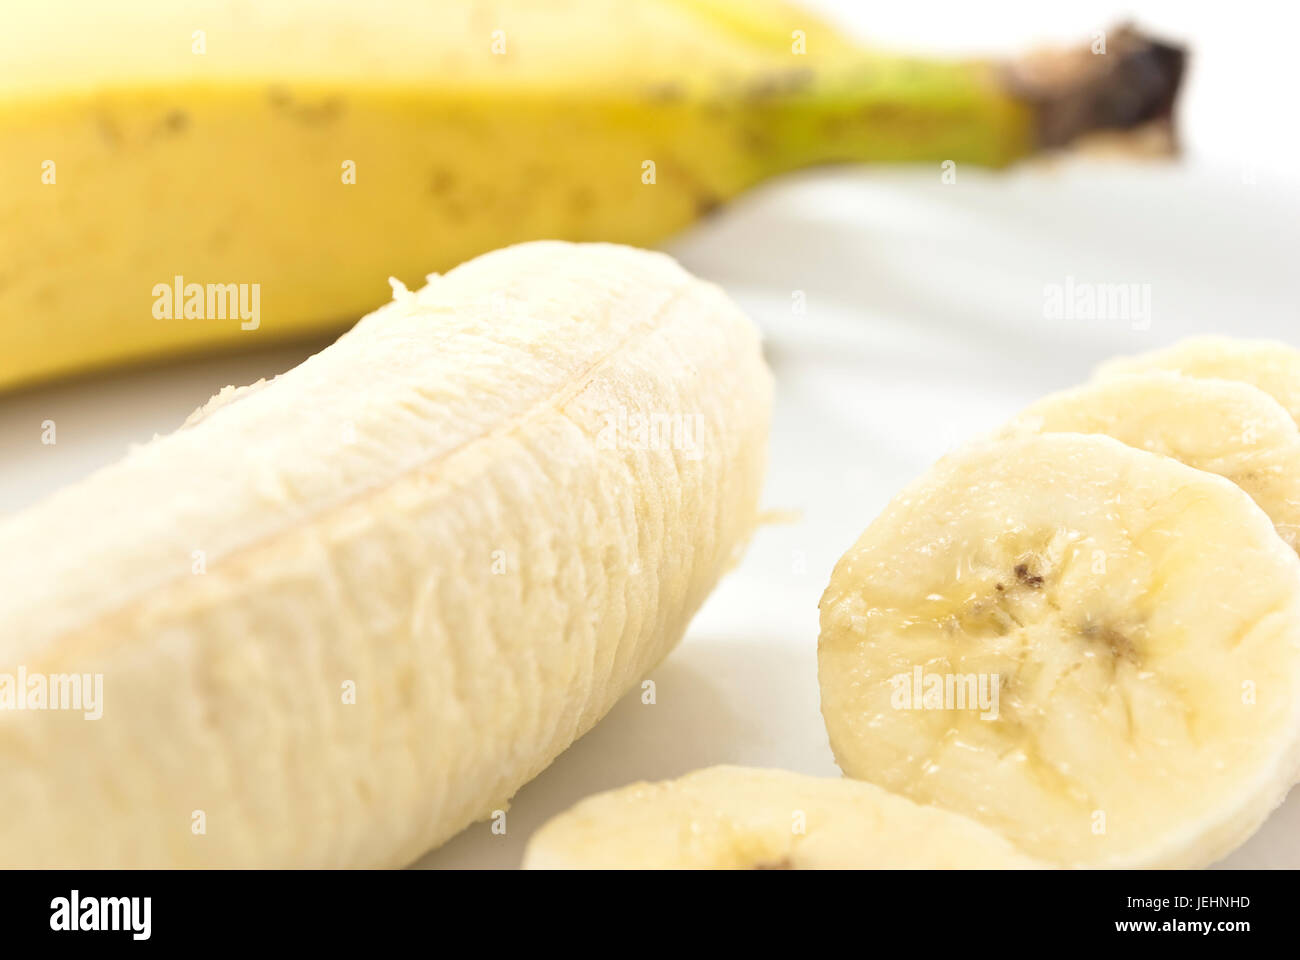 Primer plano de rodajas de plátano sobre una placa de china, junto con la porción restante de plátano pelado, con una cáscara de banana en foco suave en el fondo. Foto de stock